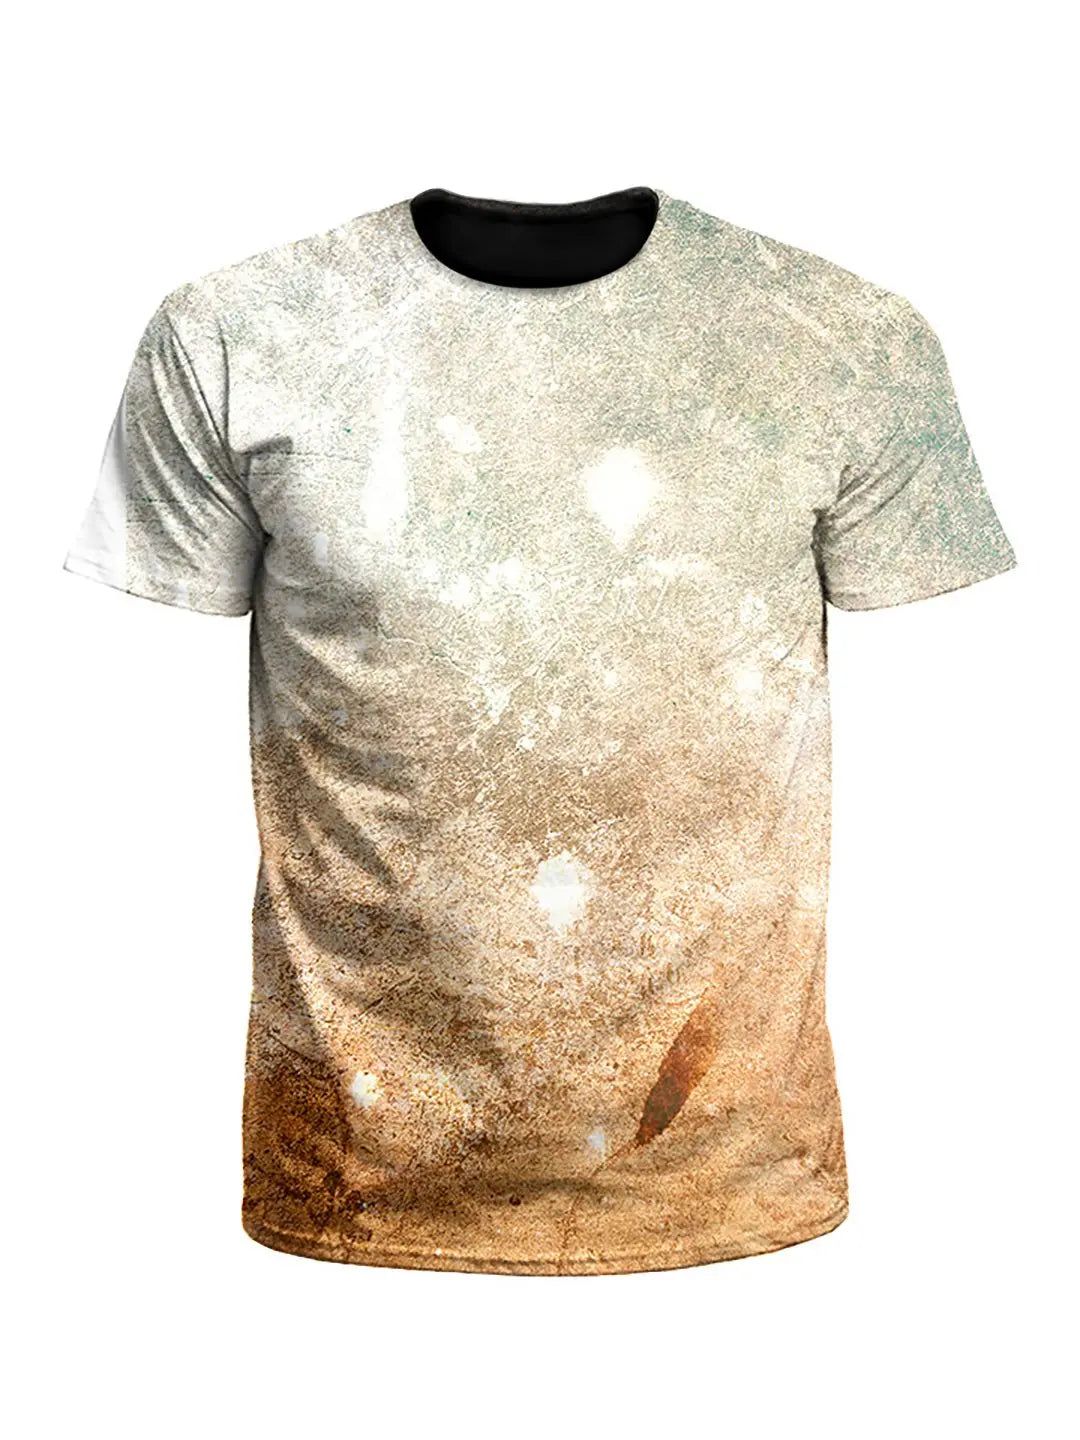 Textured Pastel Desert Galaxy Unisex T-Shirt - Boogie Threads